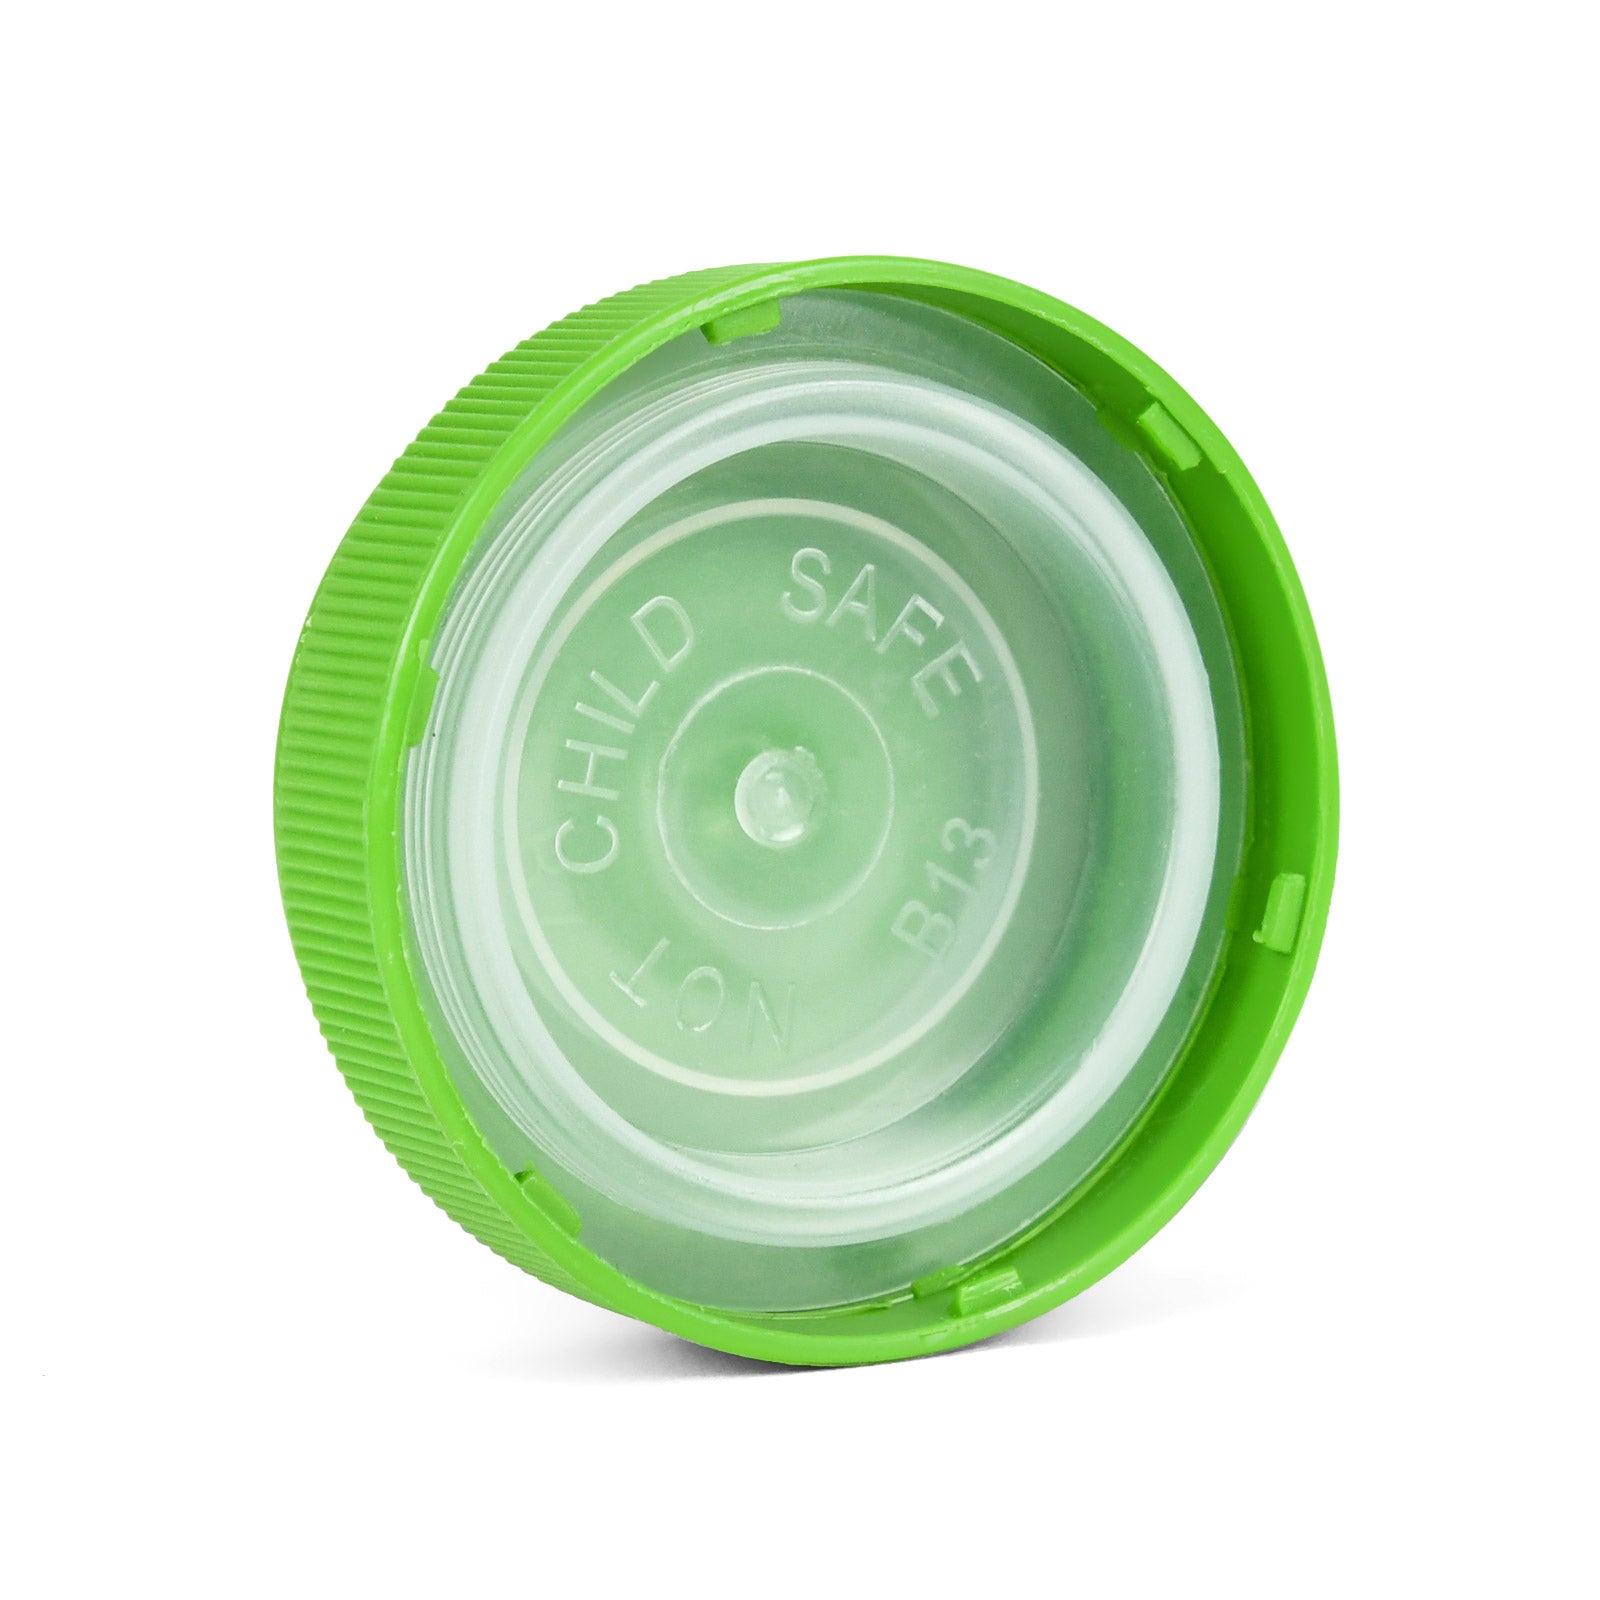 40 Dram Reversible Cap Opaque Green - 150 Count